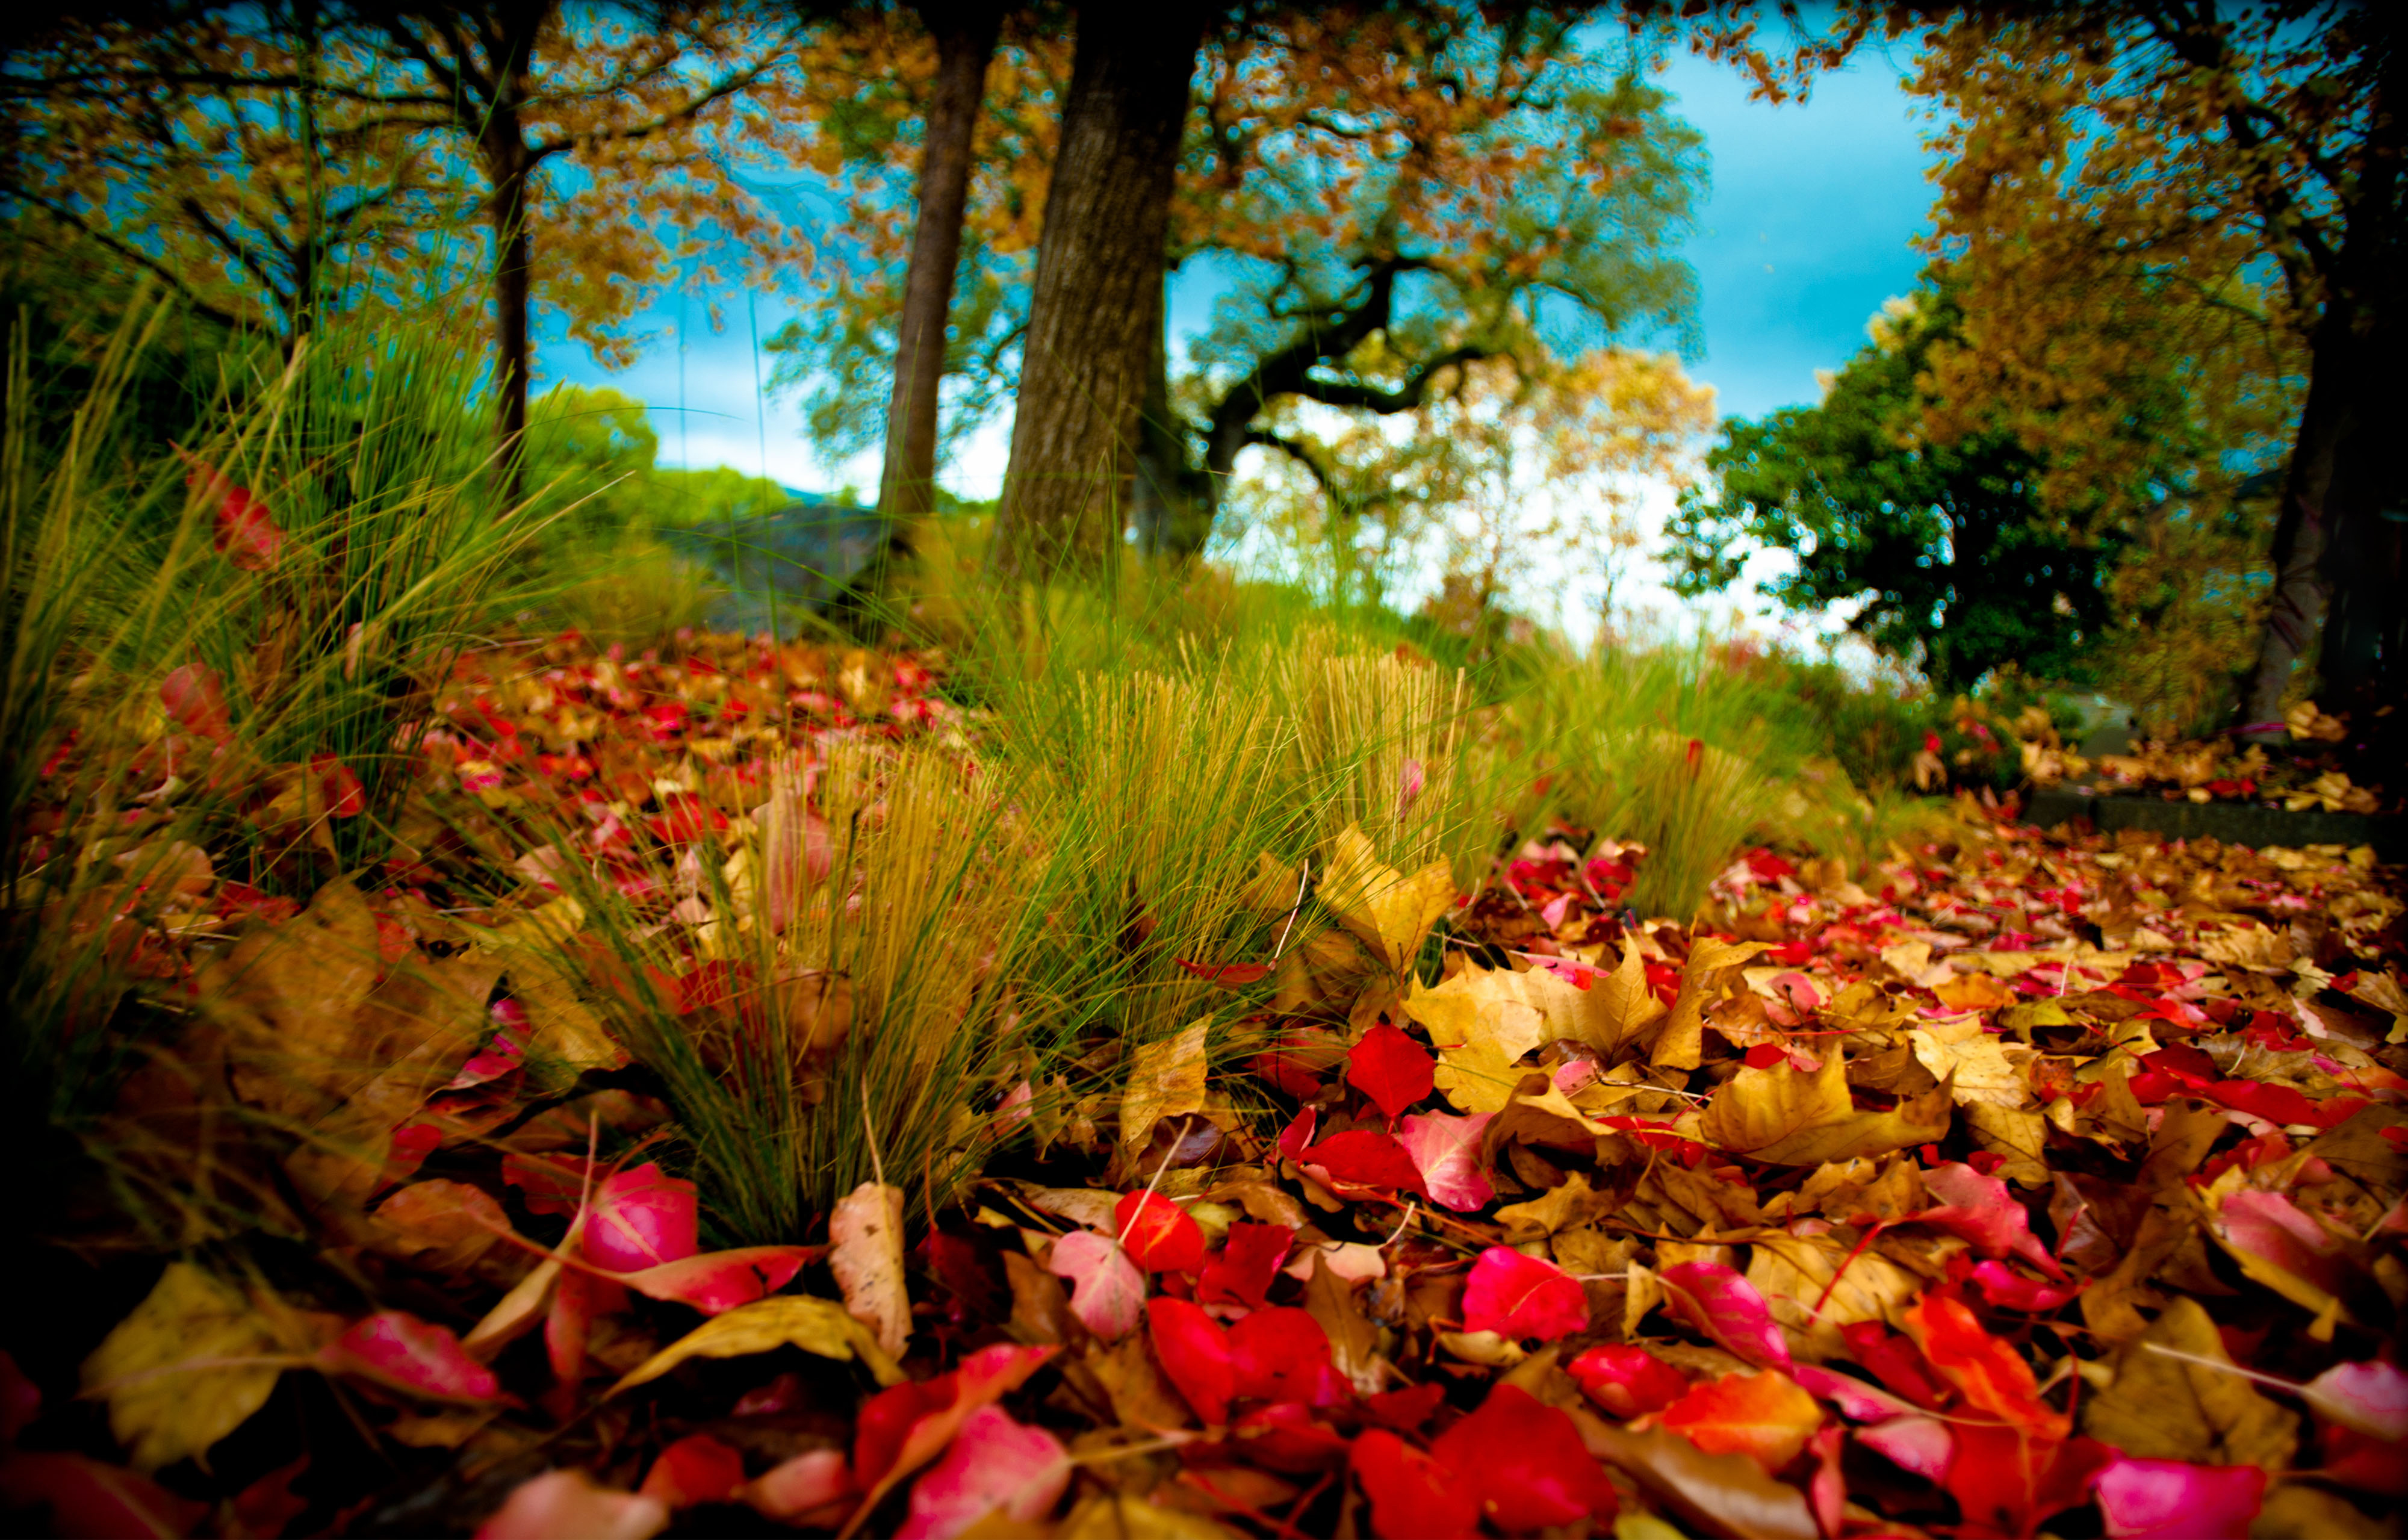 Заставка на телефон для женщин природа. Яркая природа. Природа осень. Осенние обои. Яркие краски природы.